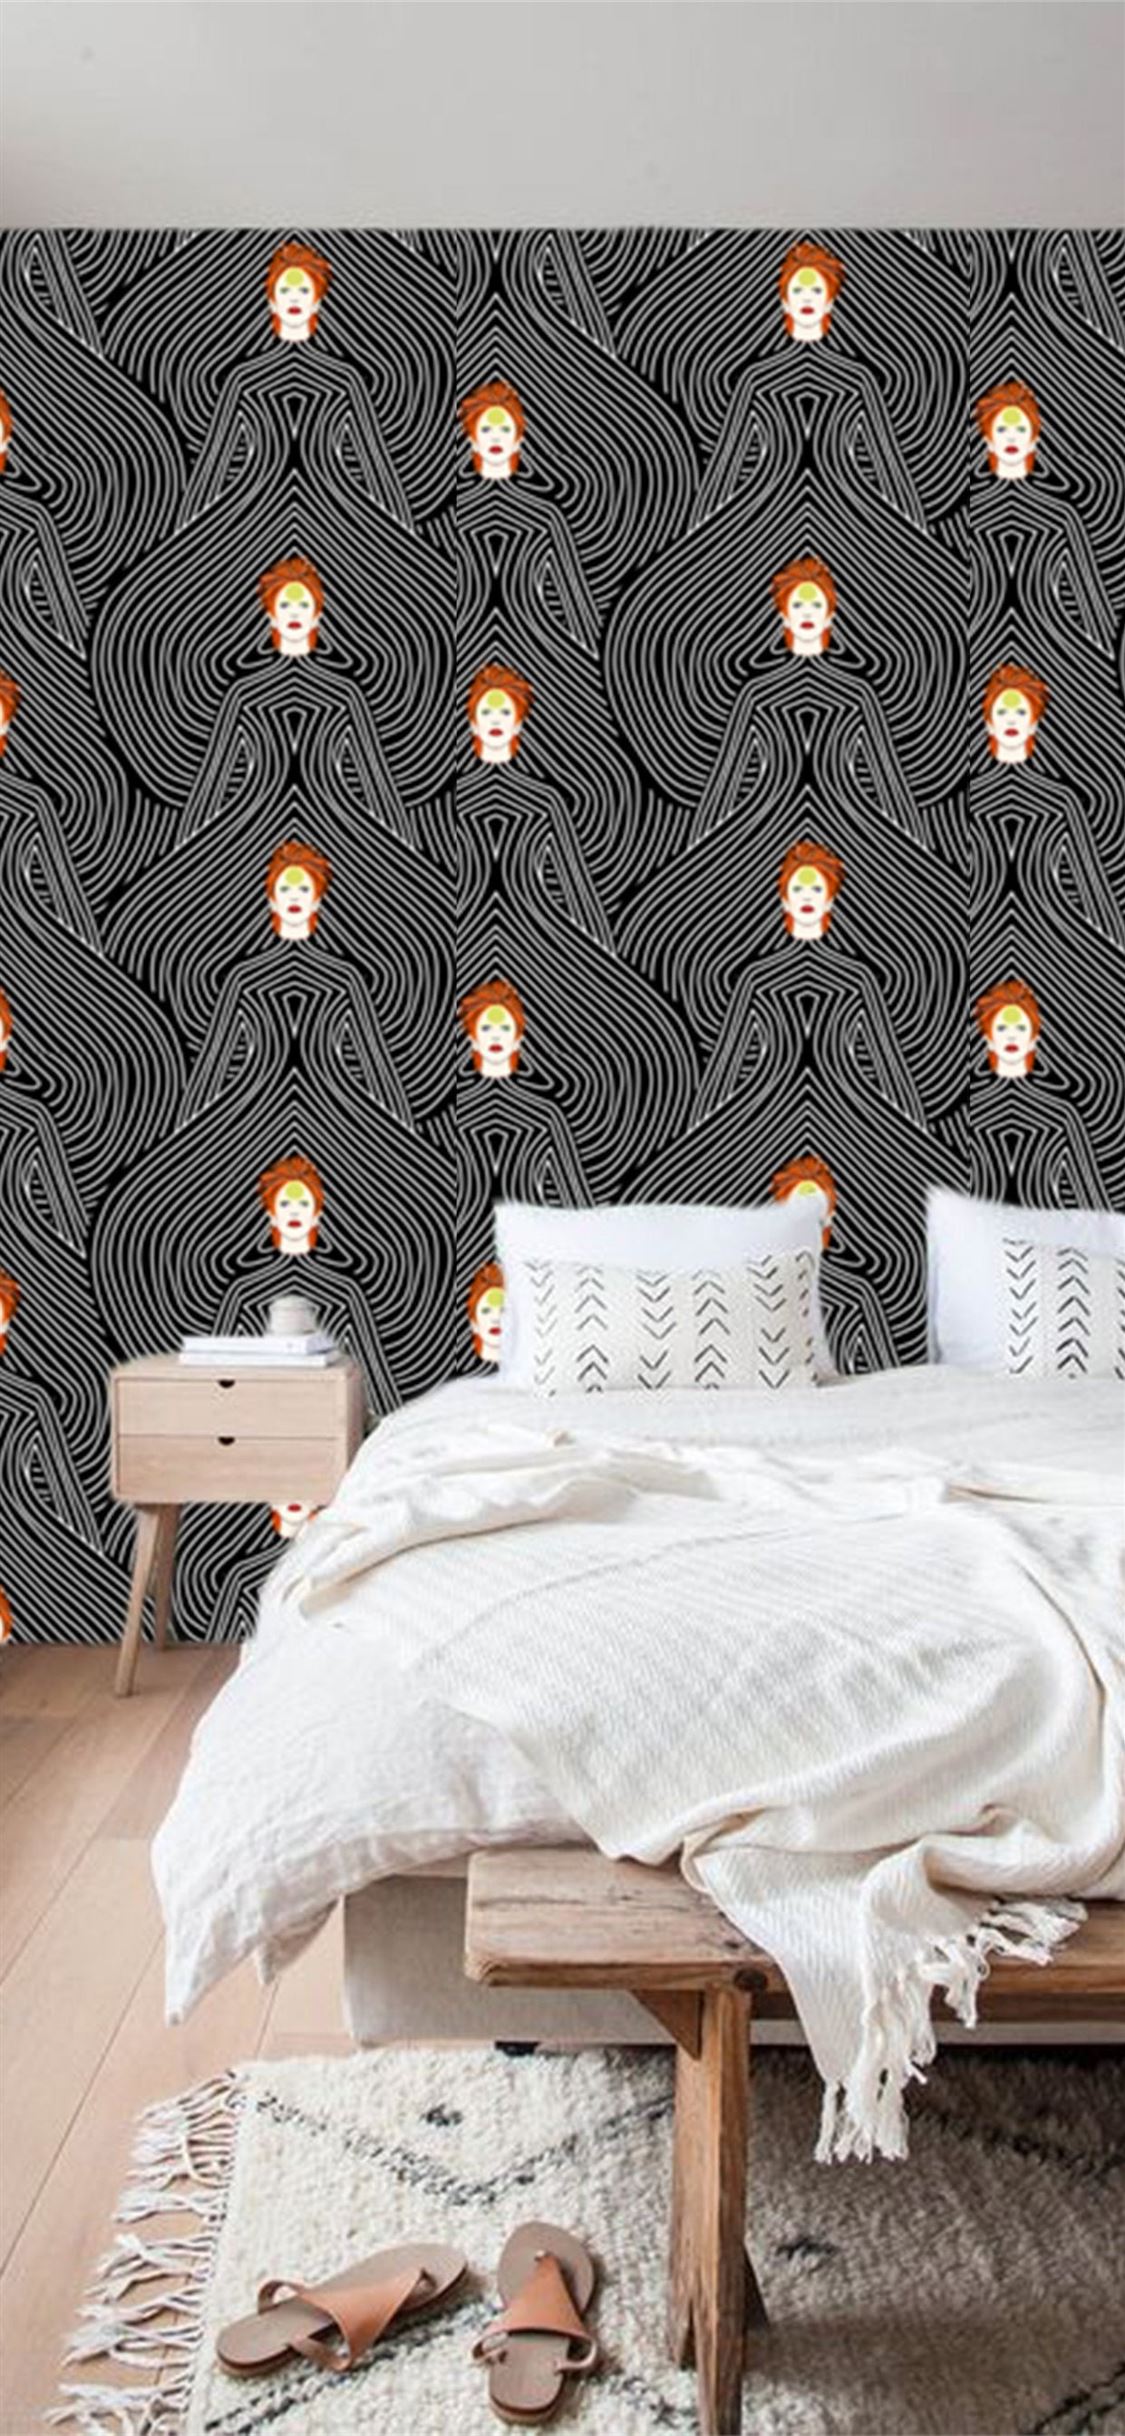 Aesthetic Bedroom Wallpapers